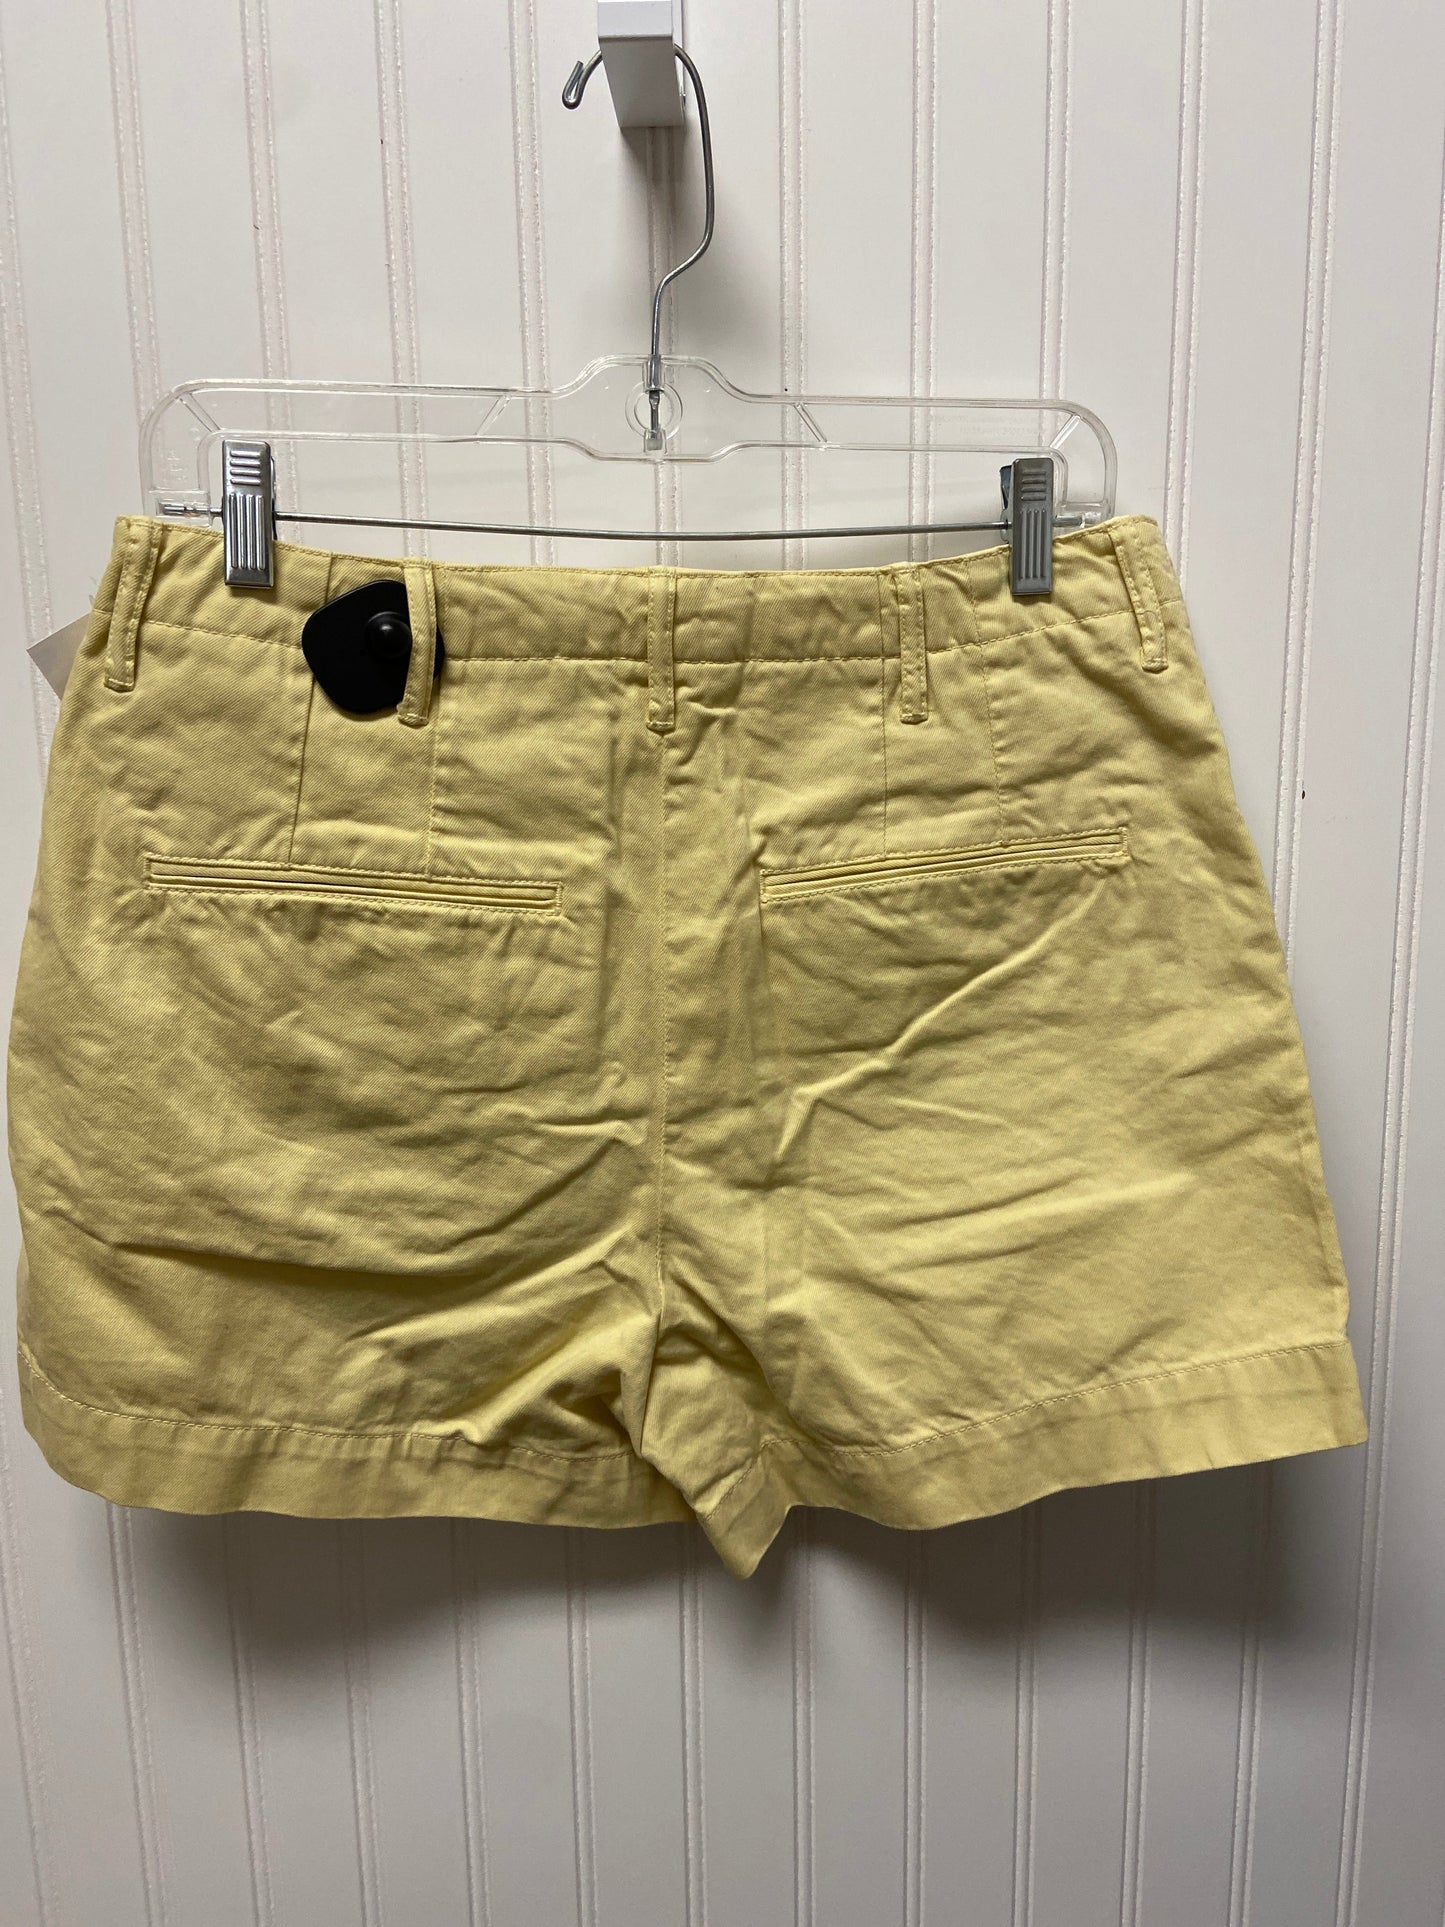 Yellow Shorts Designer Cma, Size 4